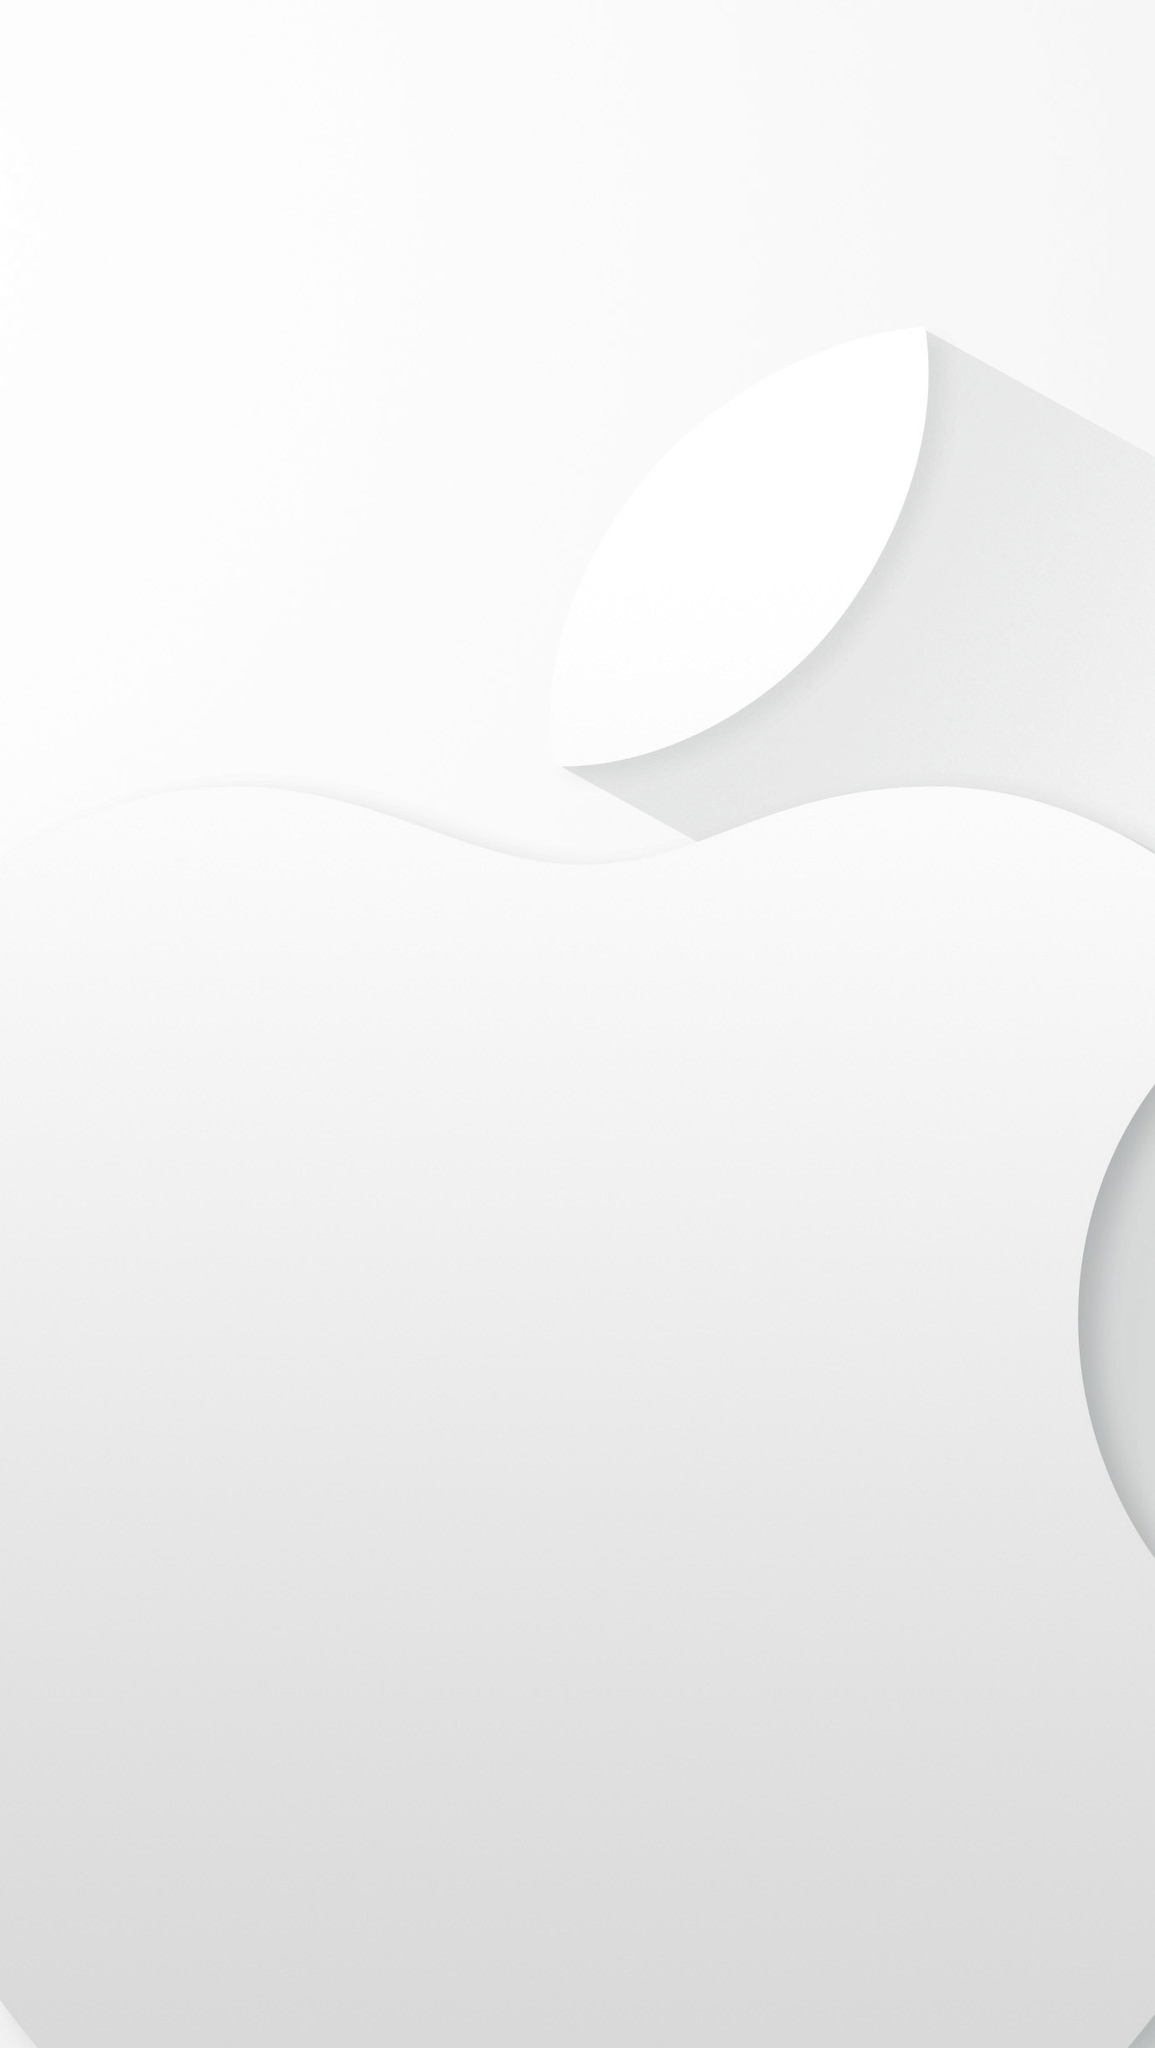 Keynote Apple Iphone 6 Del 9 Settembre Gli Sfondi Per Ios E Mac Macitynet It